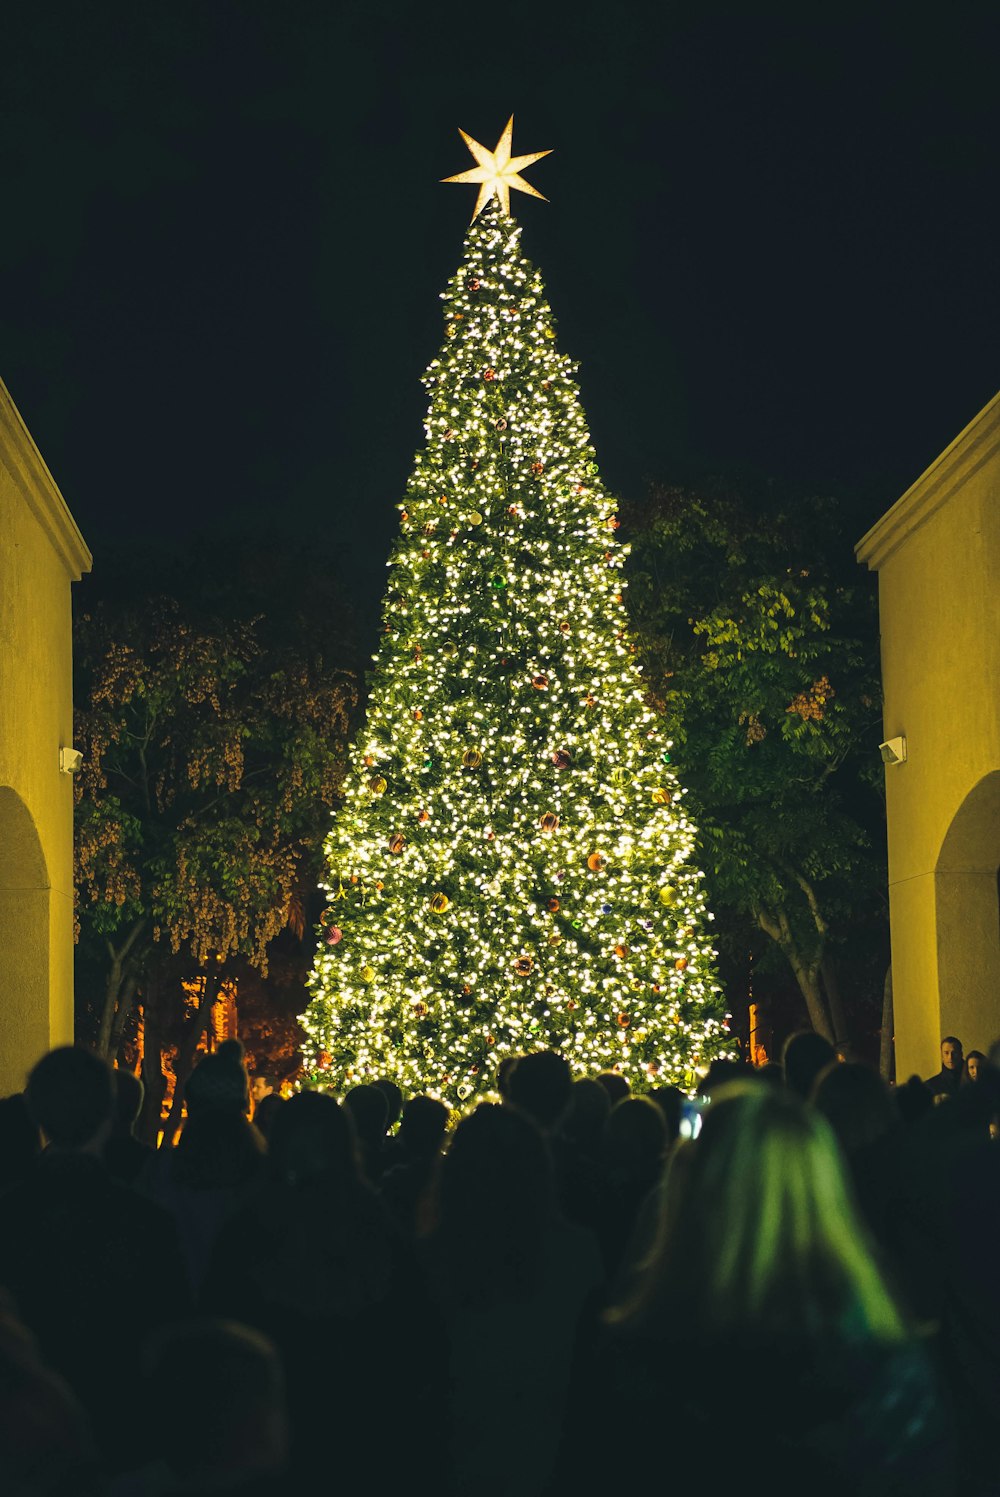 Menschen, die nachts einen beleuchteten grünen Weihnachtsbaum beobachten